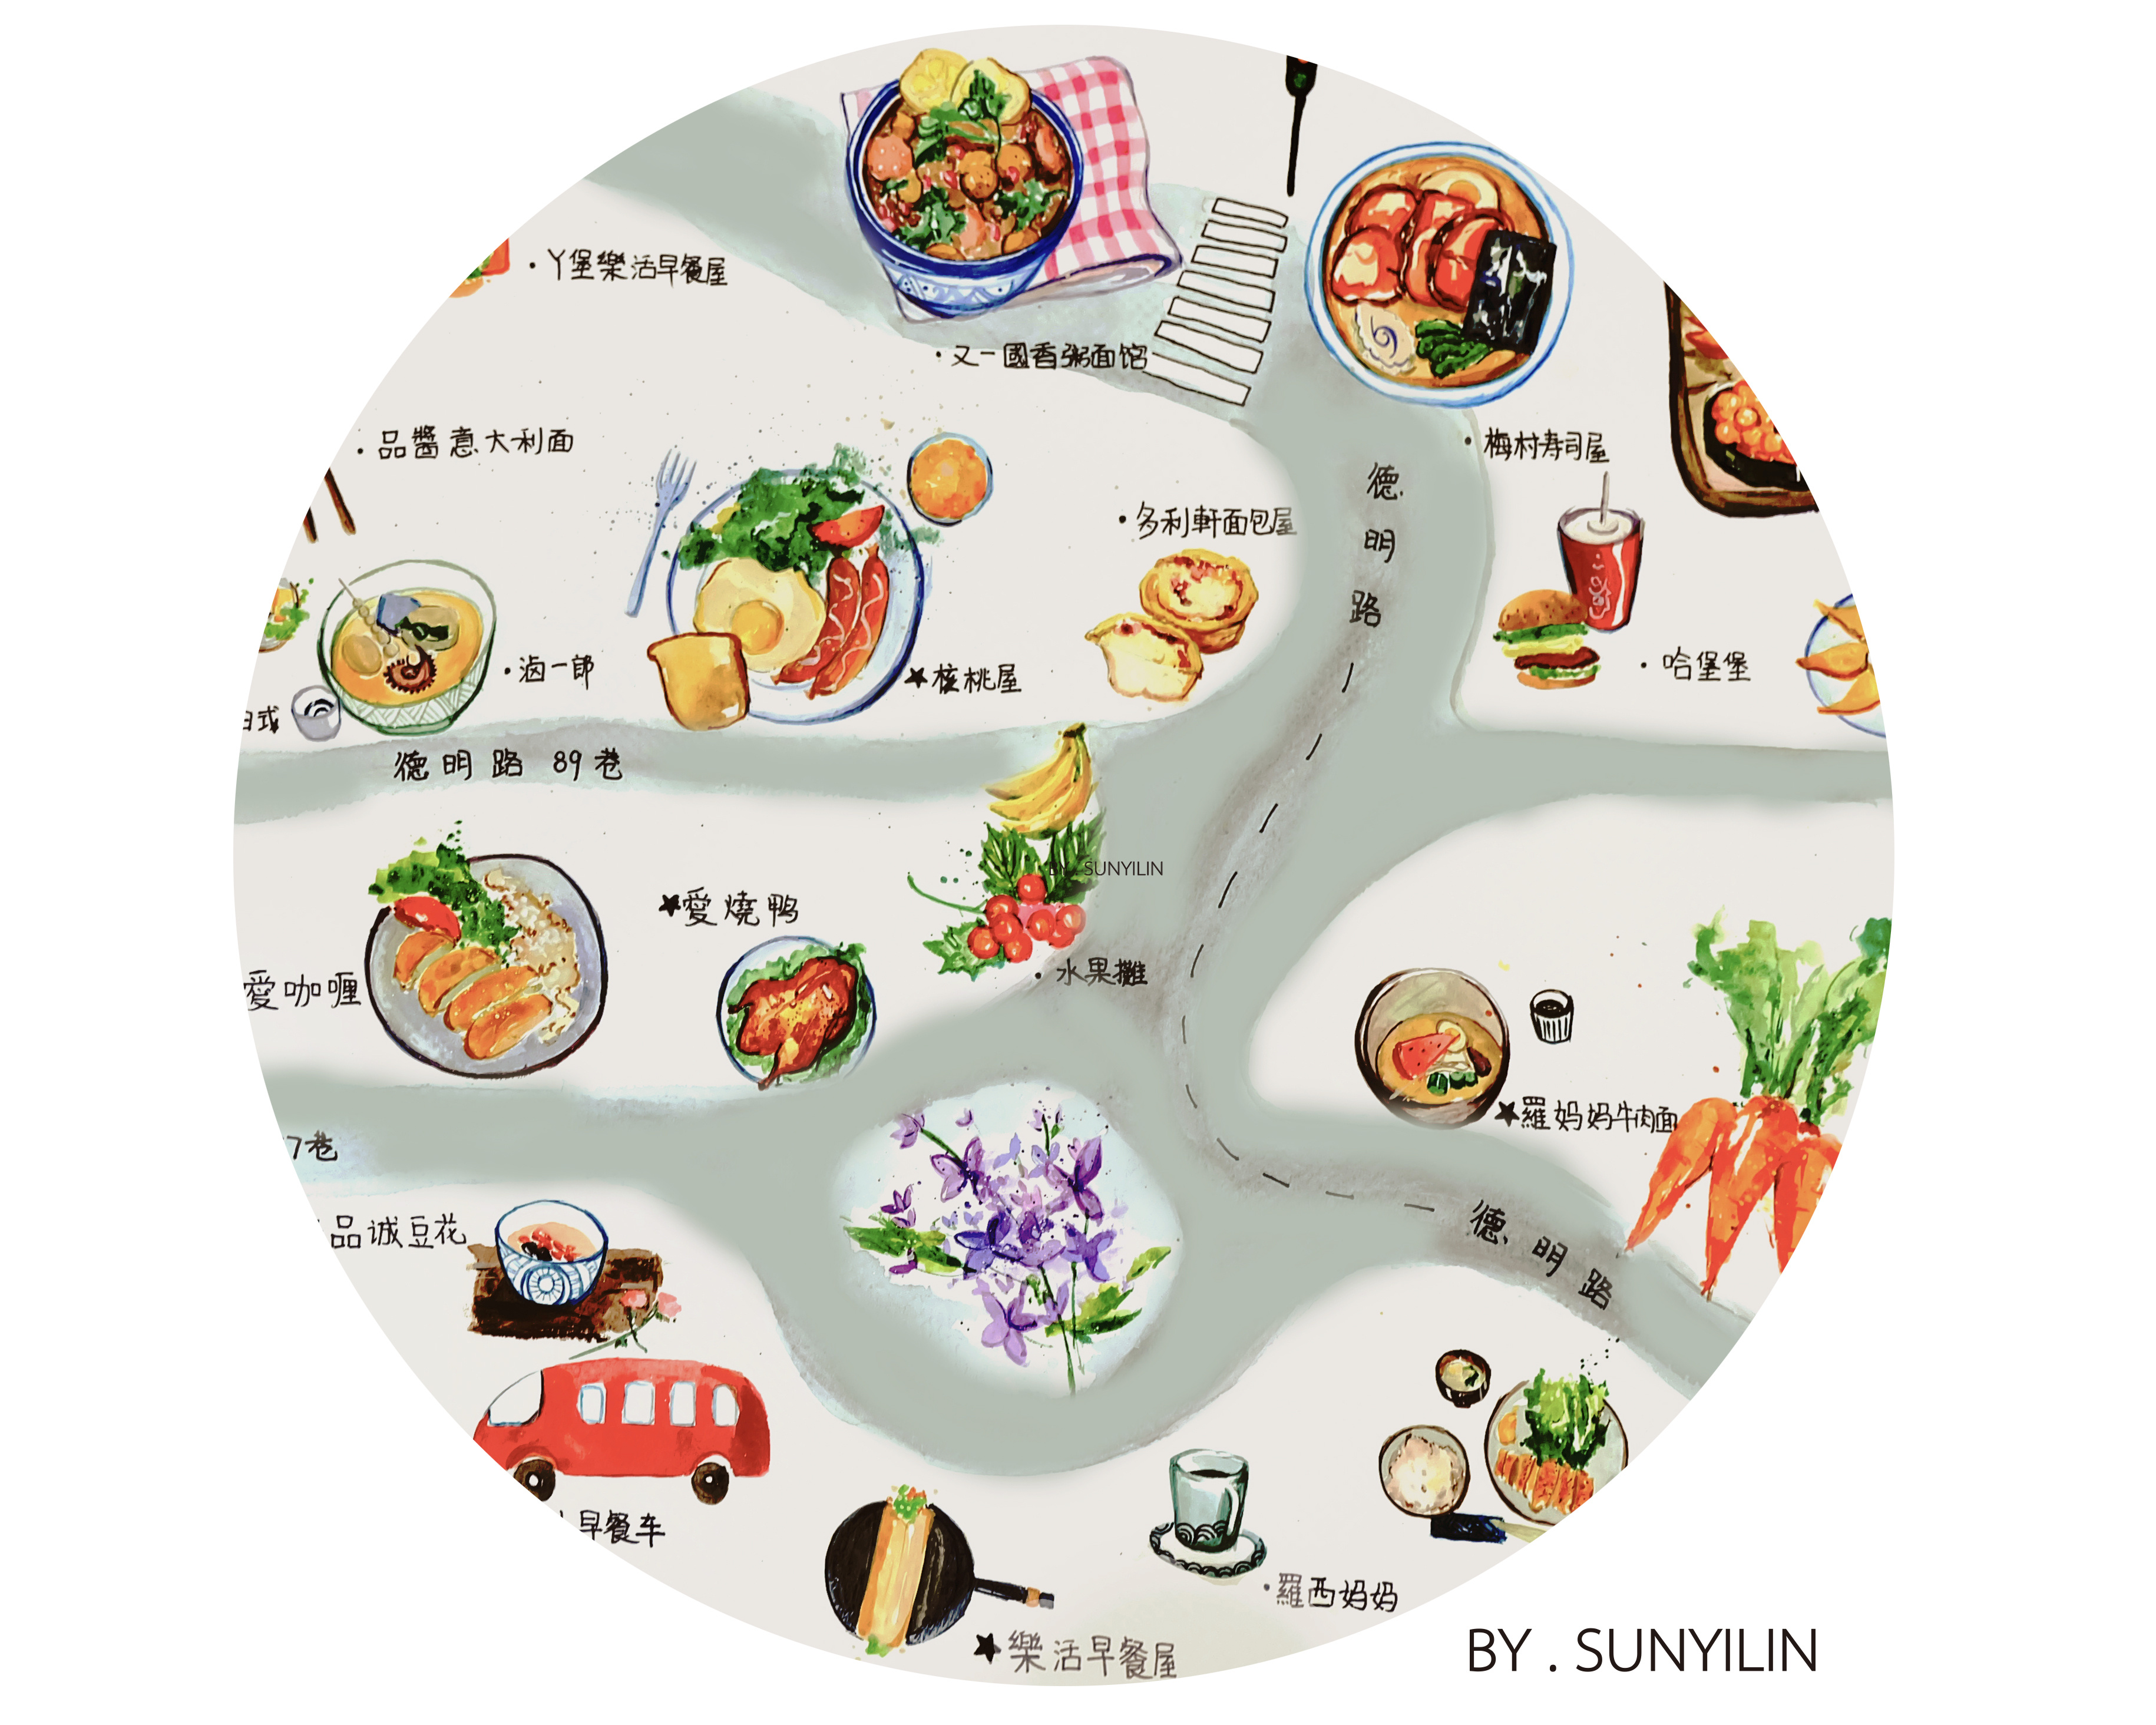 美食地图高清简单图片